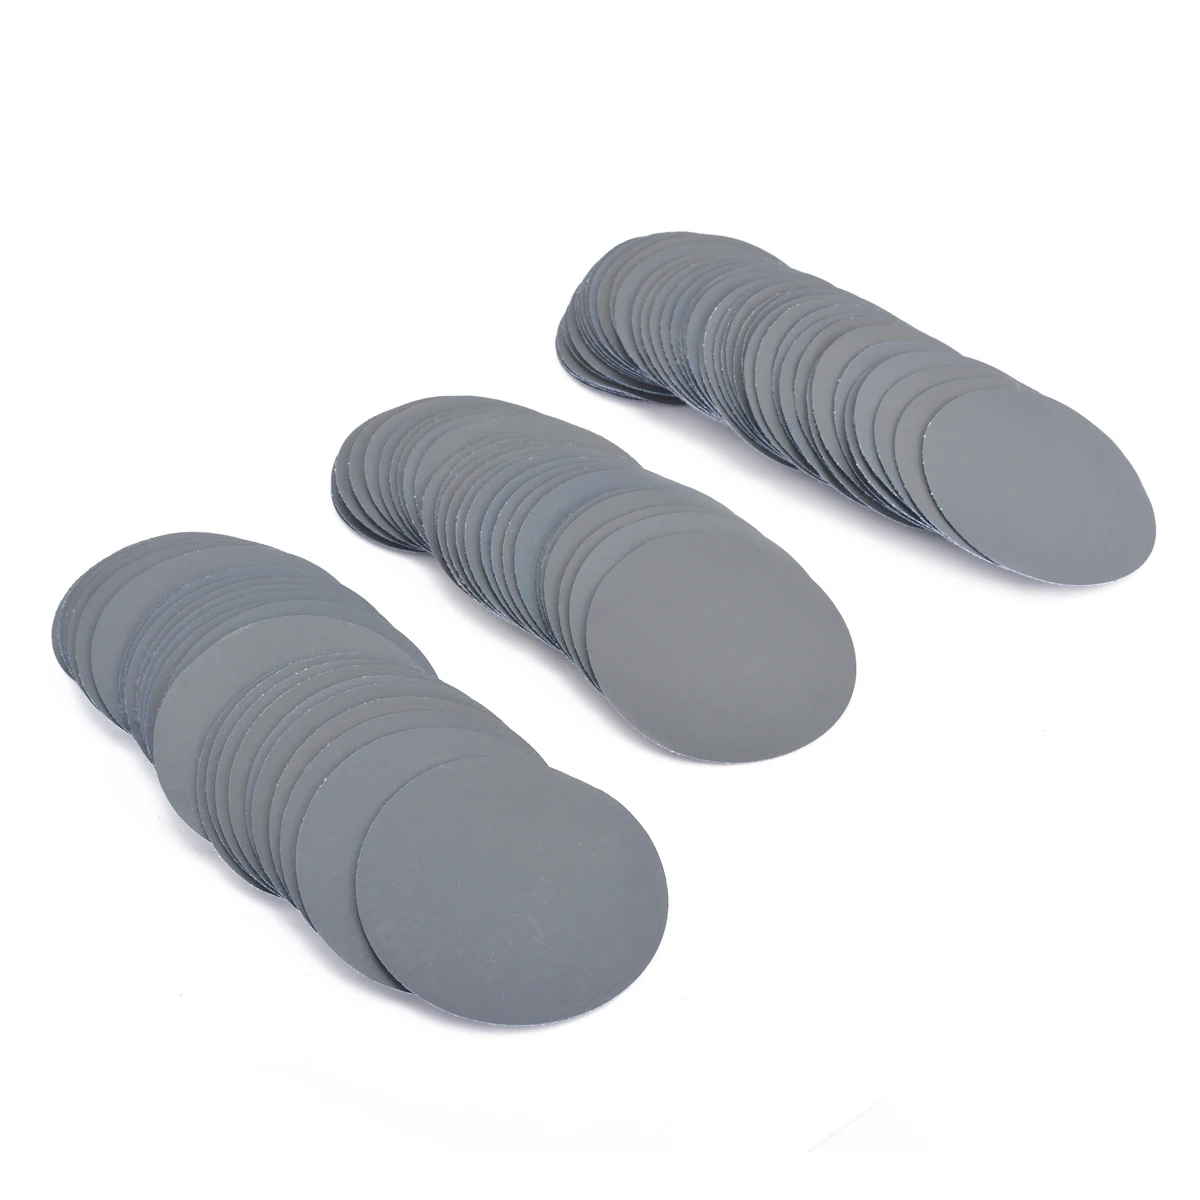 100 шт шлифовальные диски 3 дюйма/75 мм 3000 зернистости шлифовальные диски для очистки полировки колодки наждачная бумага набор